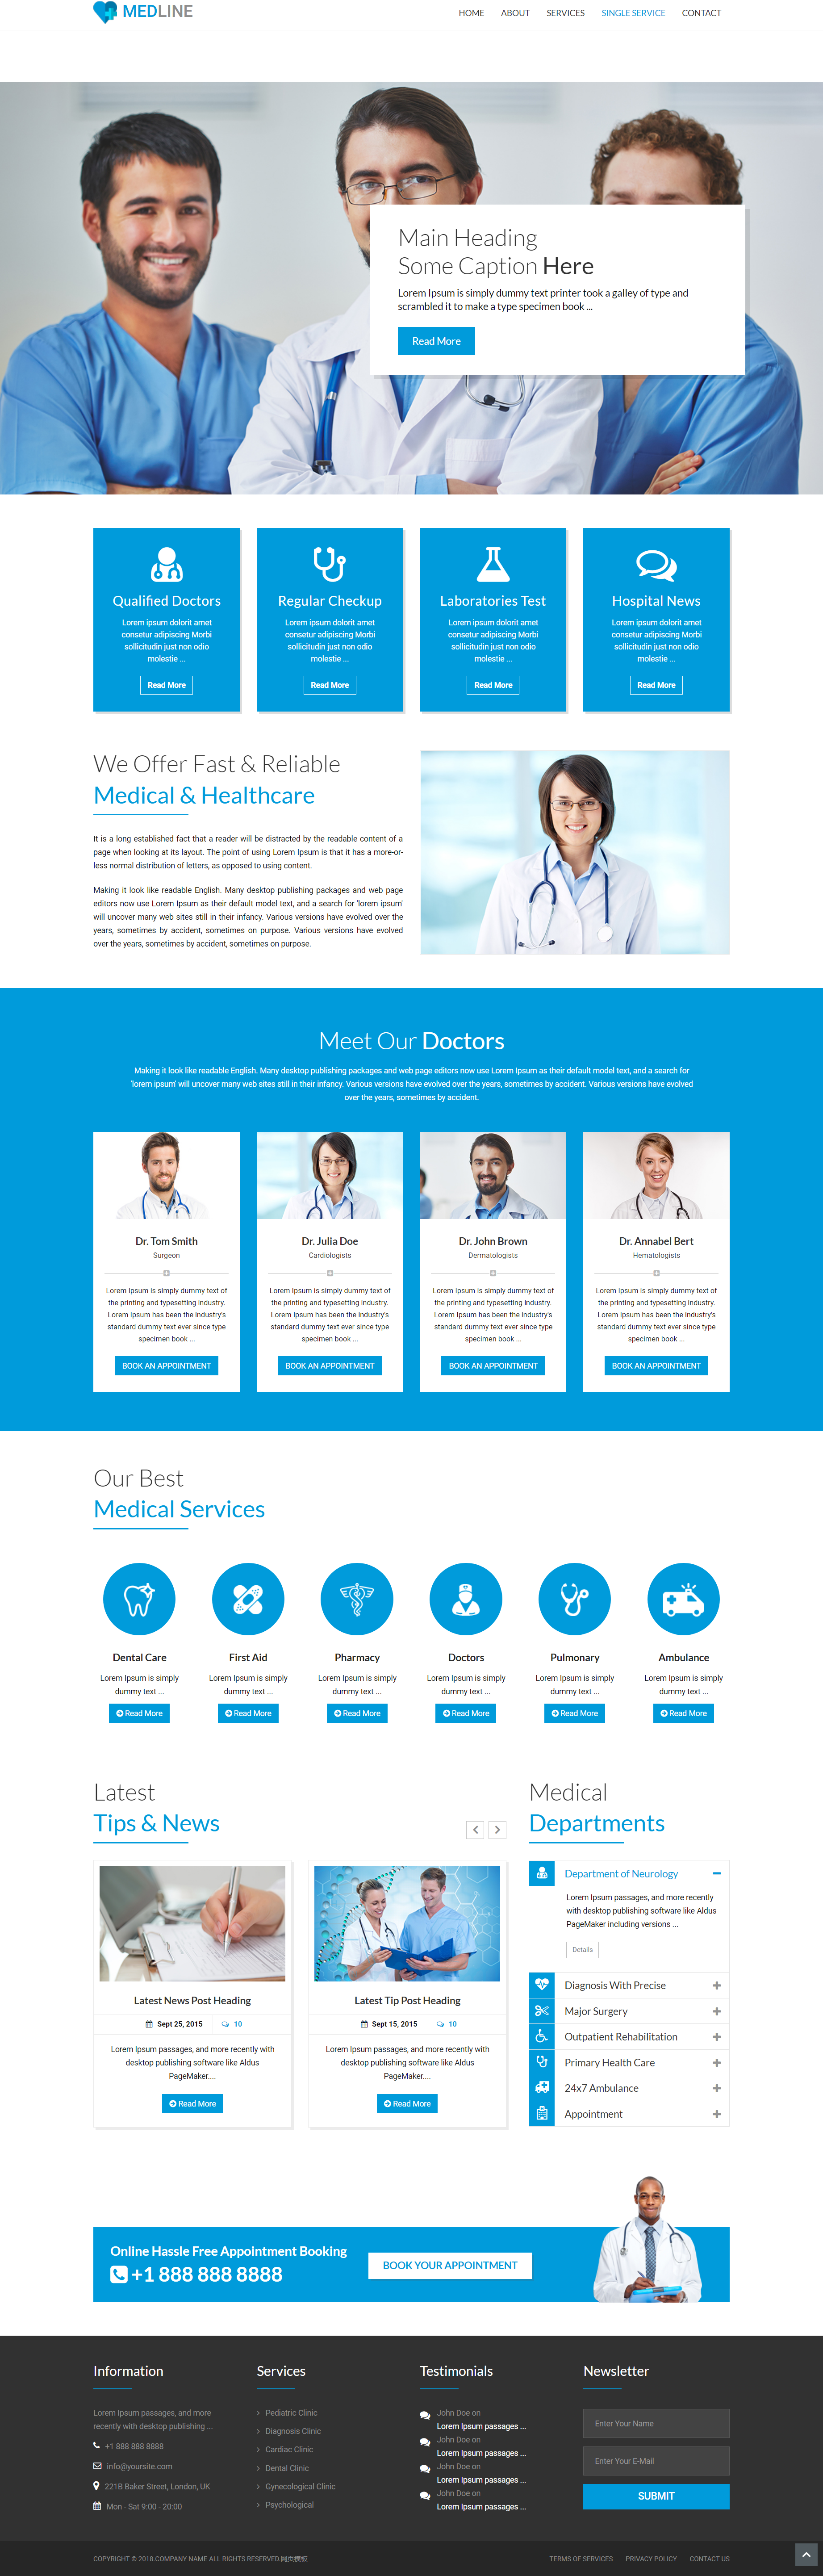 蓝色简洁风格响应式医疗健康企业网站模板